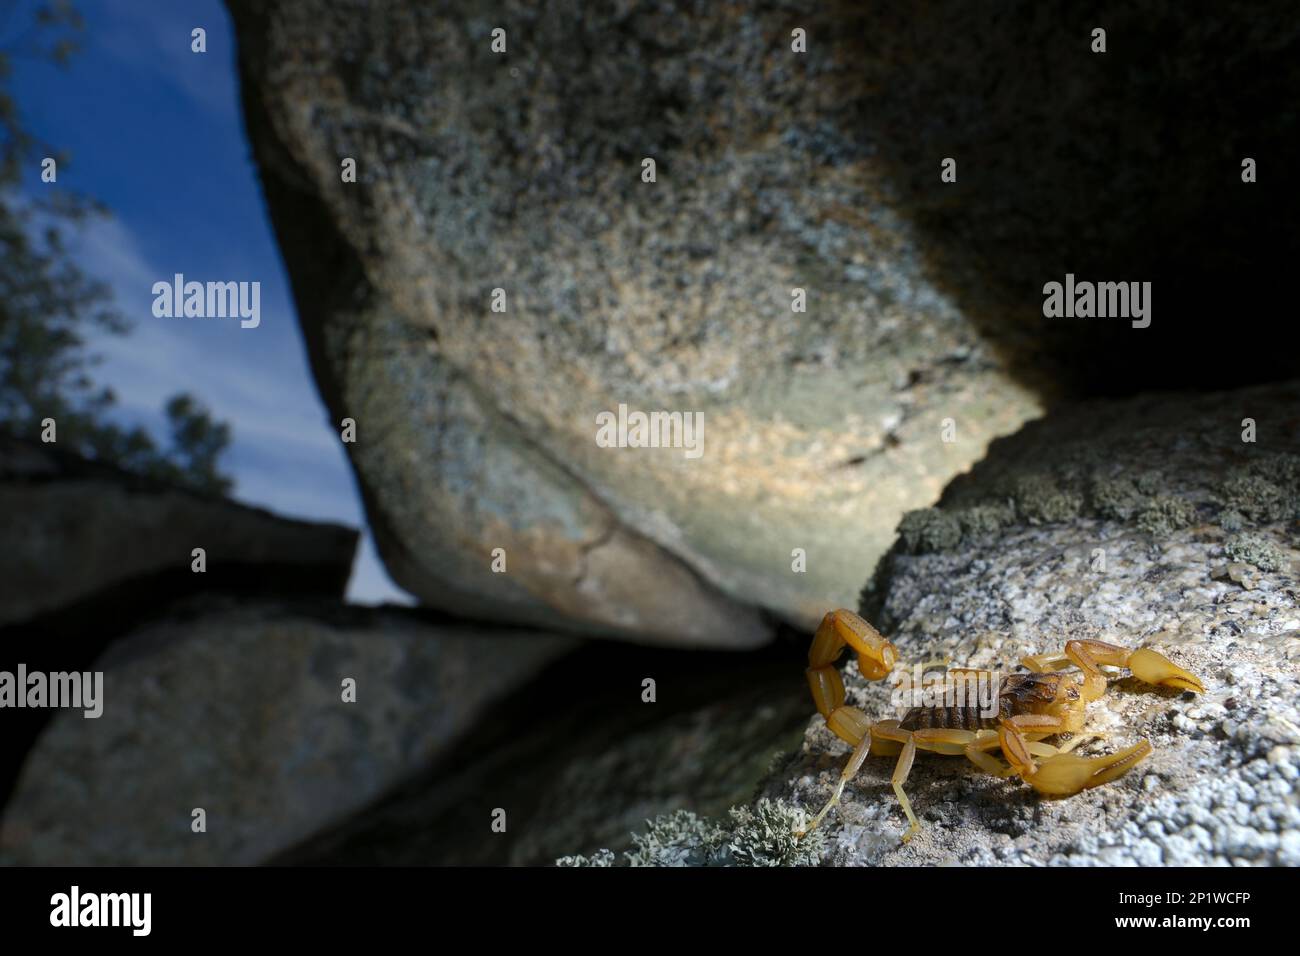 Common european scorpion (Buthus occitanus), Field scorpions, Other animals, Spiders, Arachnids, Animals, Scorpions, Common European Scorpion adult Stock Photo